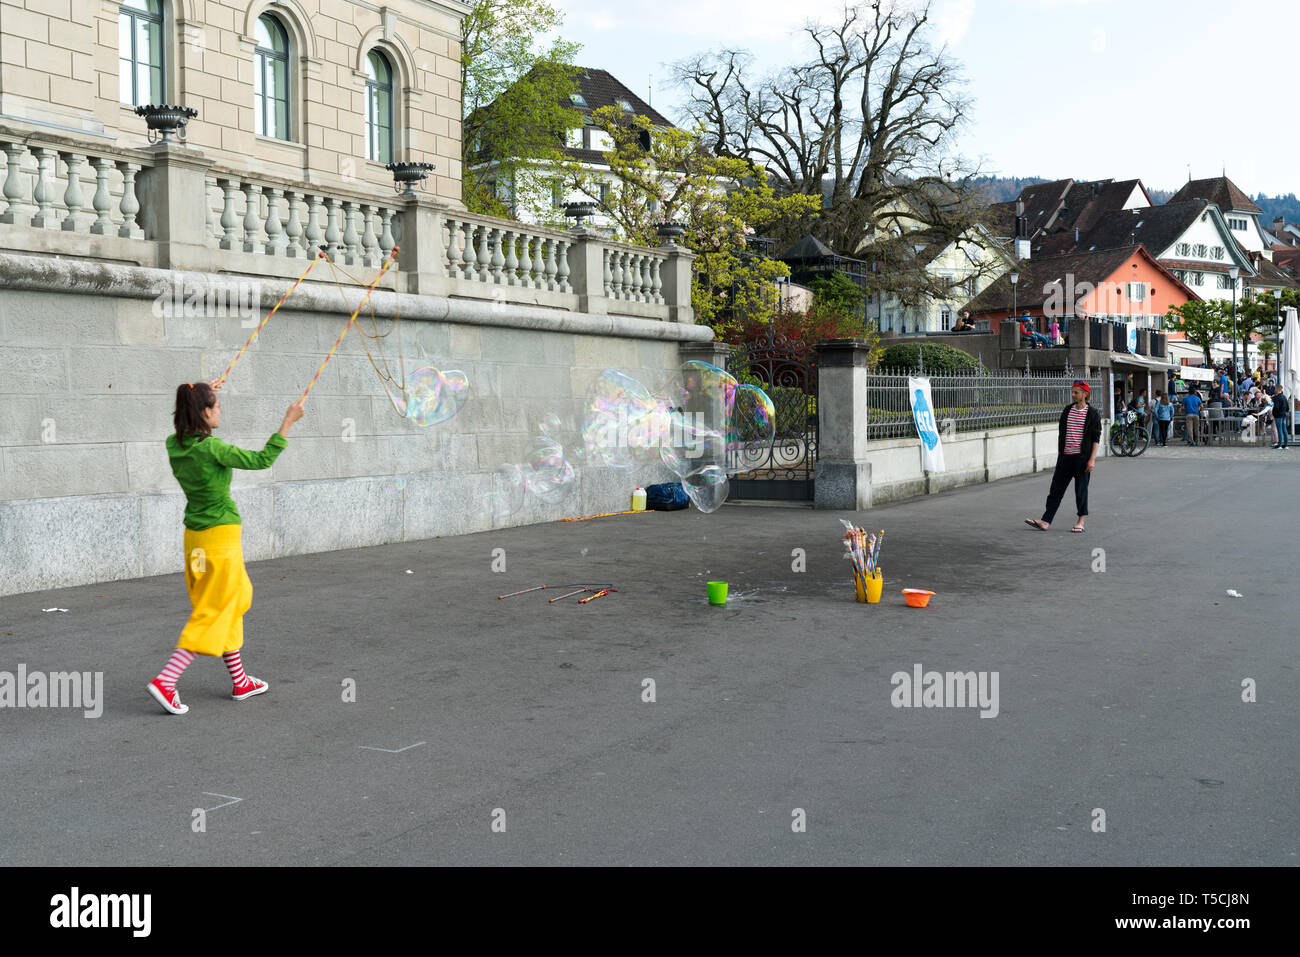 Zug, ZG / Suisse - 20 avril, 2019 : les artistes de rue faisant des bulles de savon géantes pendant le week-end de Pâques célébrations le lac de Zoug Banque D'Images